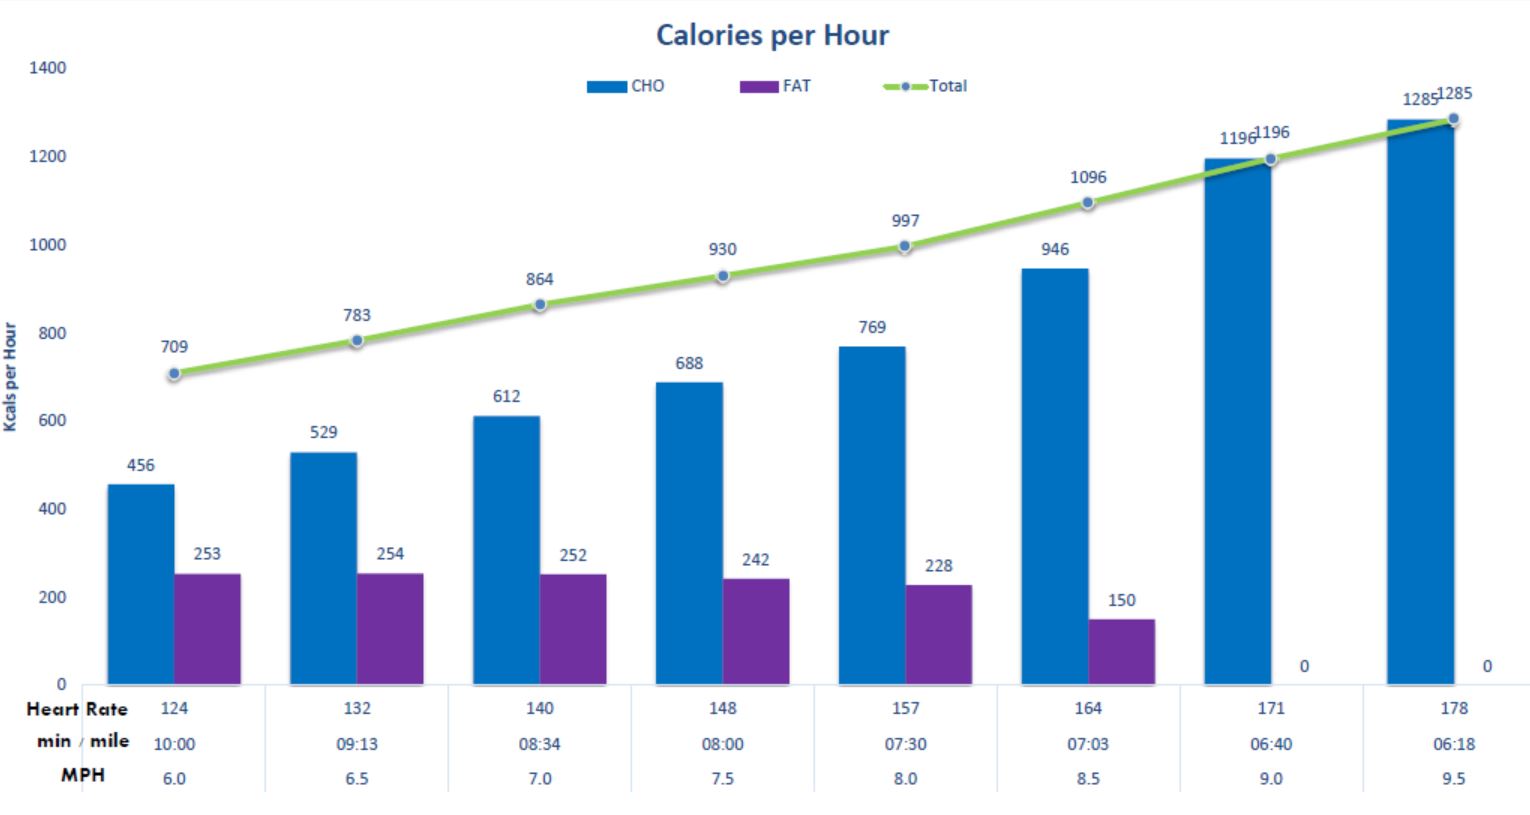 calories per hour